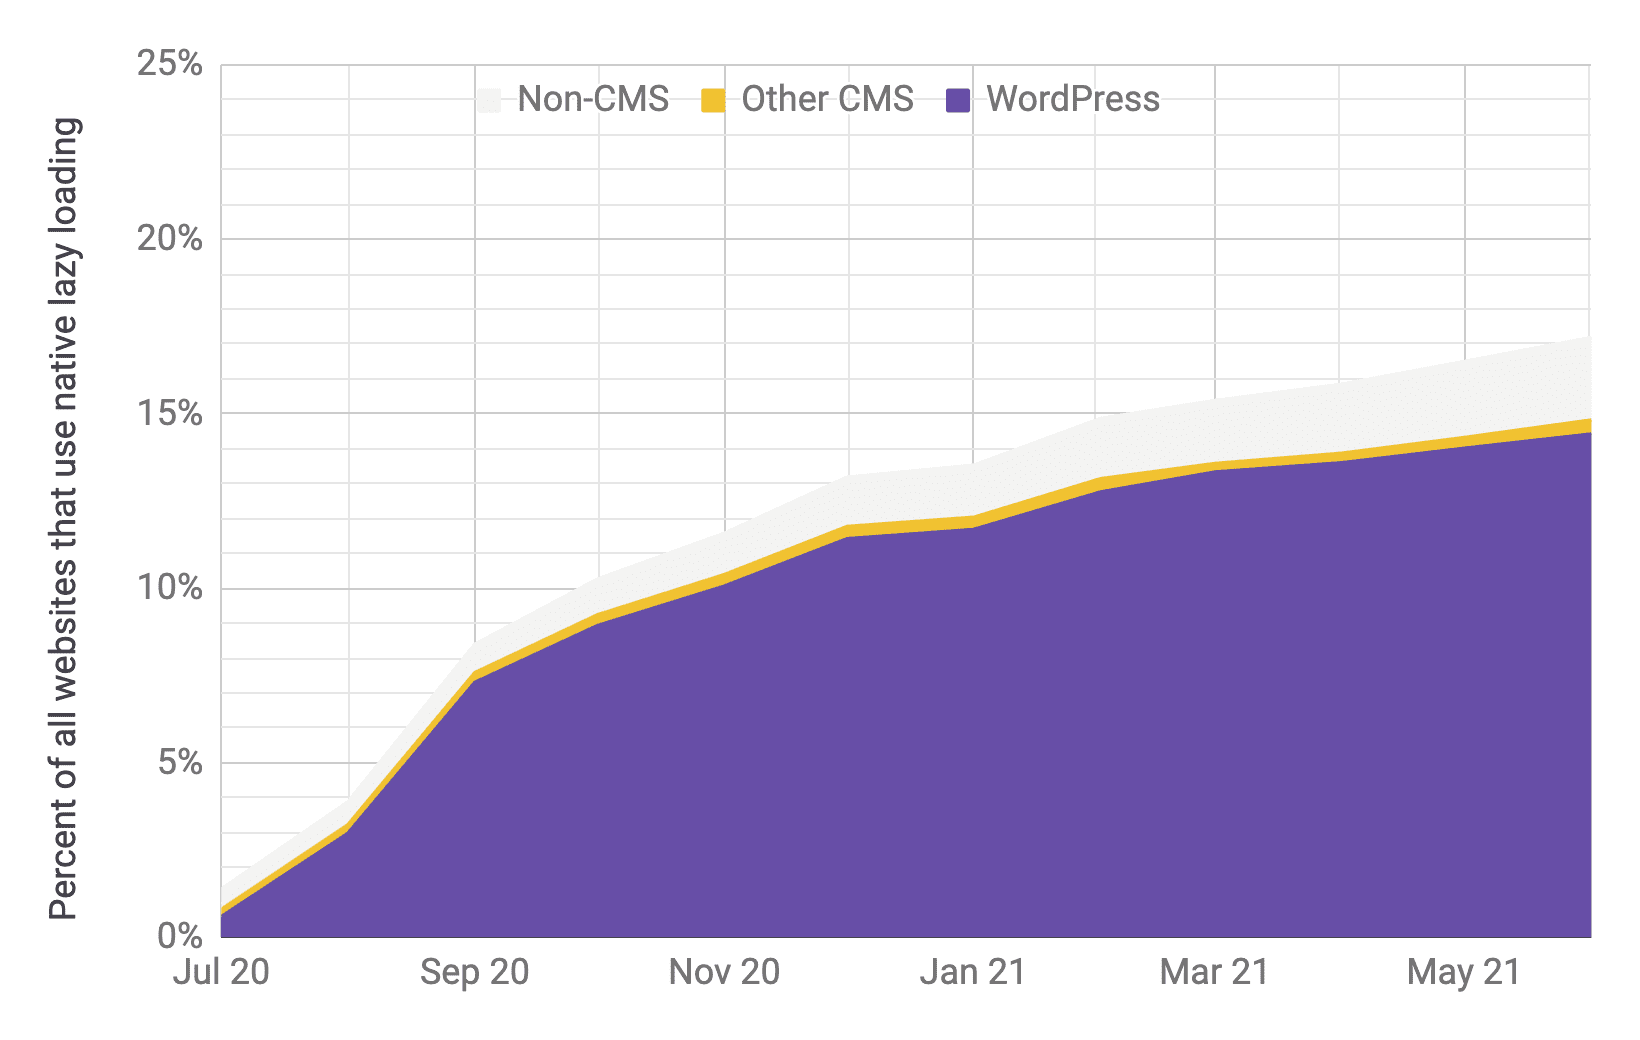 Zeitreihendiagramm für Lazy Loading, wobei WordPress im Vergleich zu anderen CMS und Nicht-CMS der vorrangige Player ist, mit ähnlichen Anteilen wie im vorherigen Diagramm. Zwischen Juli 2020 und Juni 2021 ist die Akzeptanzrate insgesamt deutlich von 1% auf 17% gestiegen.